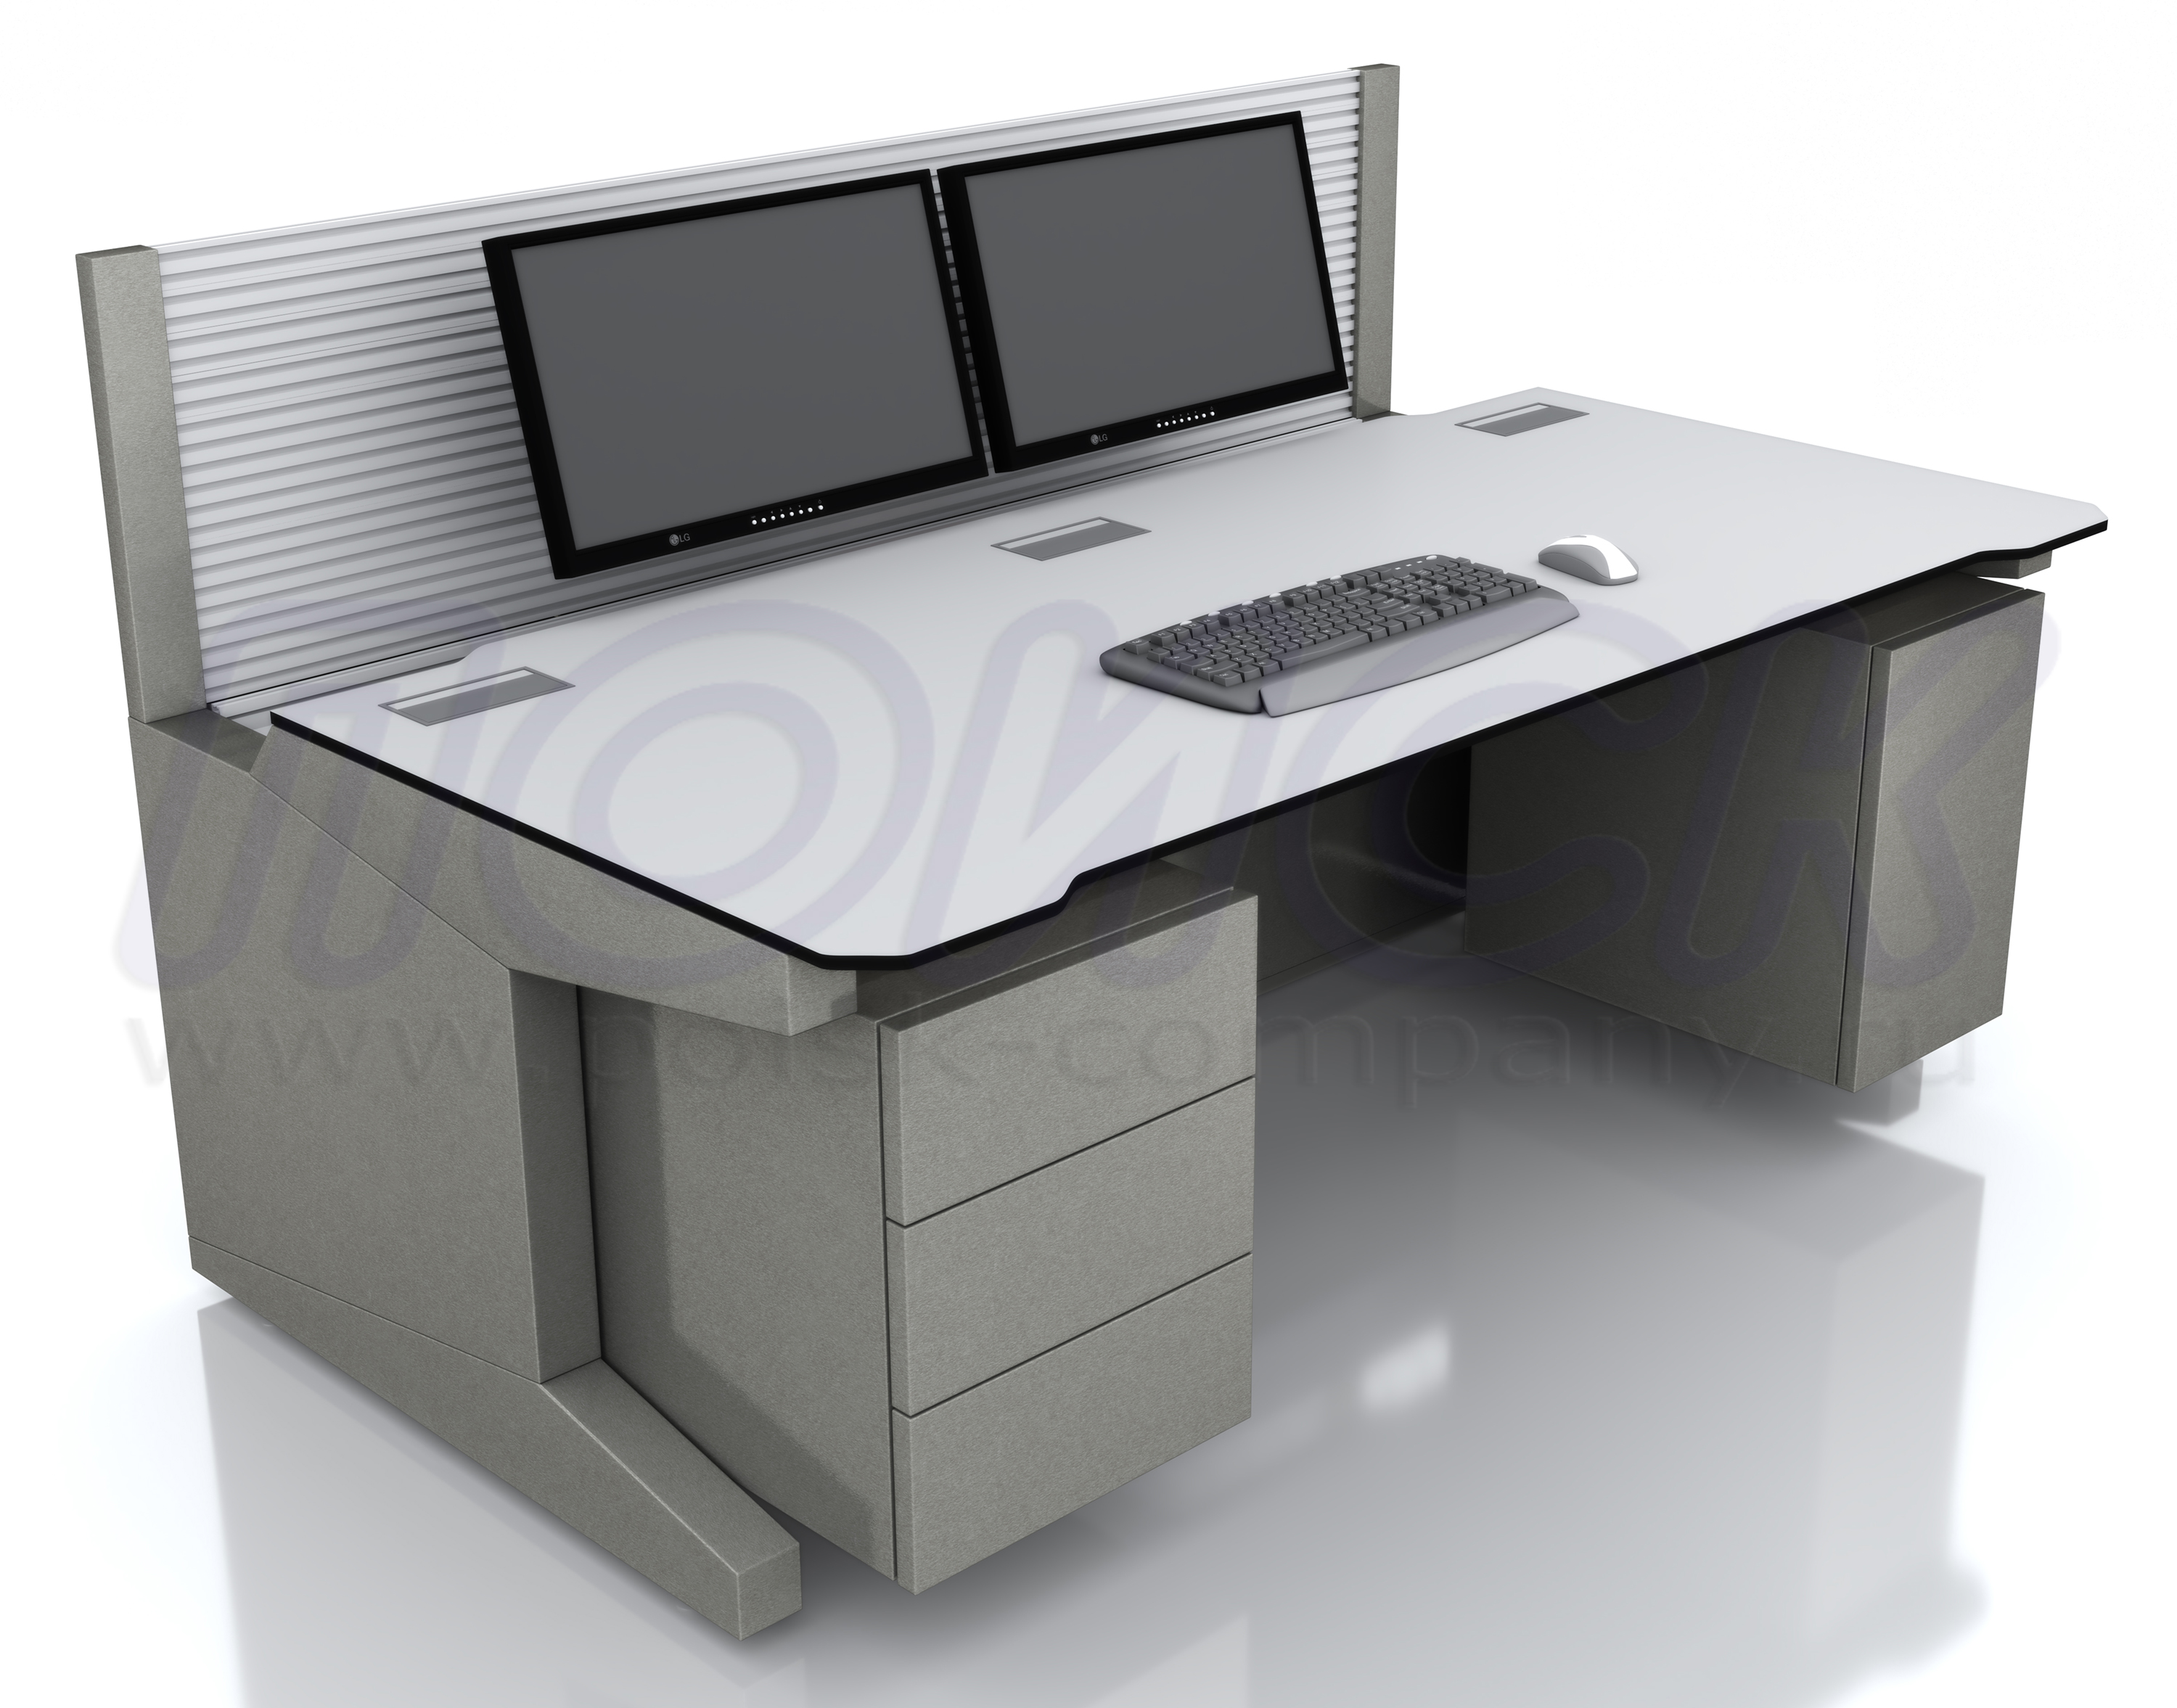 Вертикальная монтажная поверхность типа slatwall на столе серии ПОИСК-H закрепляет различные оборудования и полки для хранения документации